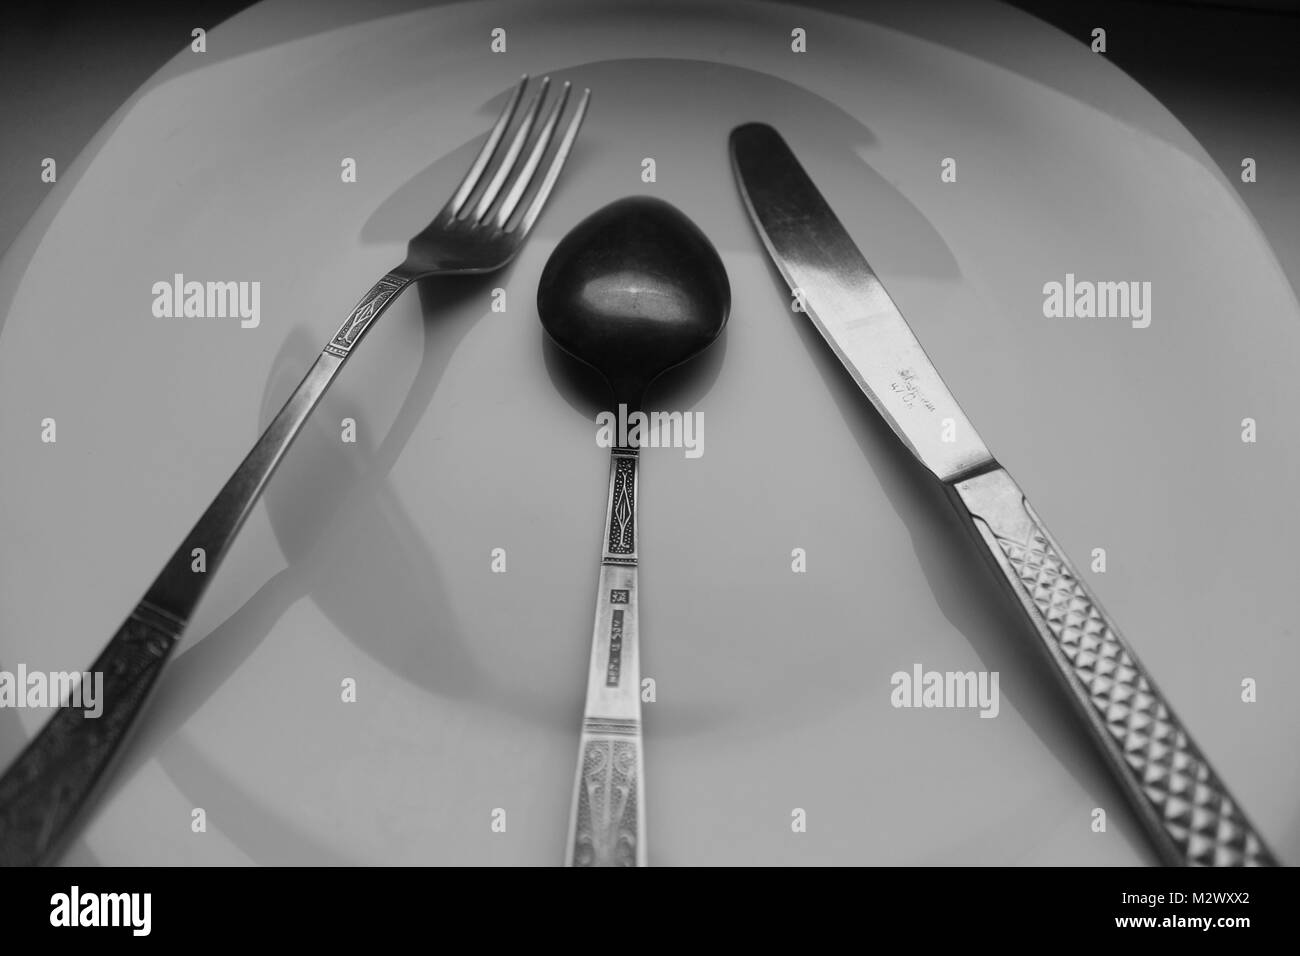 Grande Assiette de porcelaine blanche vide avec couteau, fourchette et cuillère pour préparer le tableau de service pour le dîner Banque D'Images